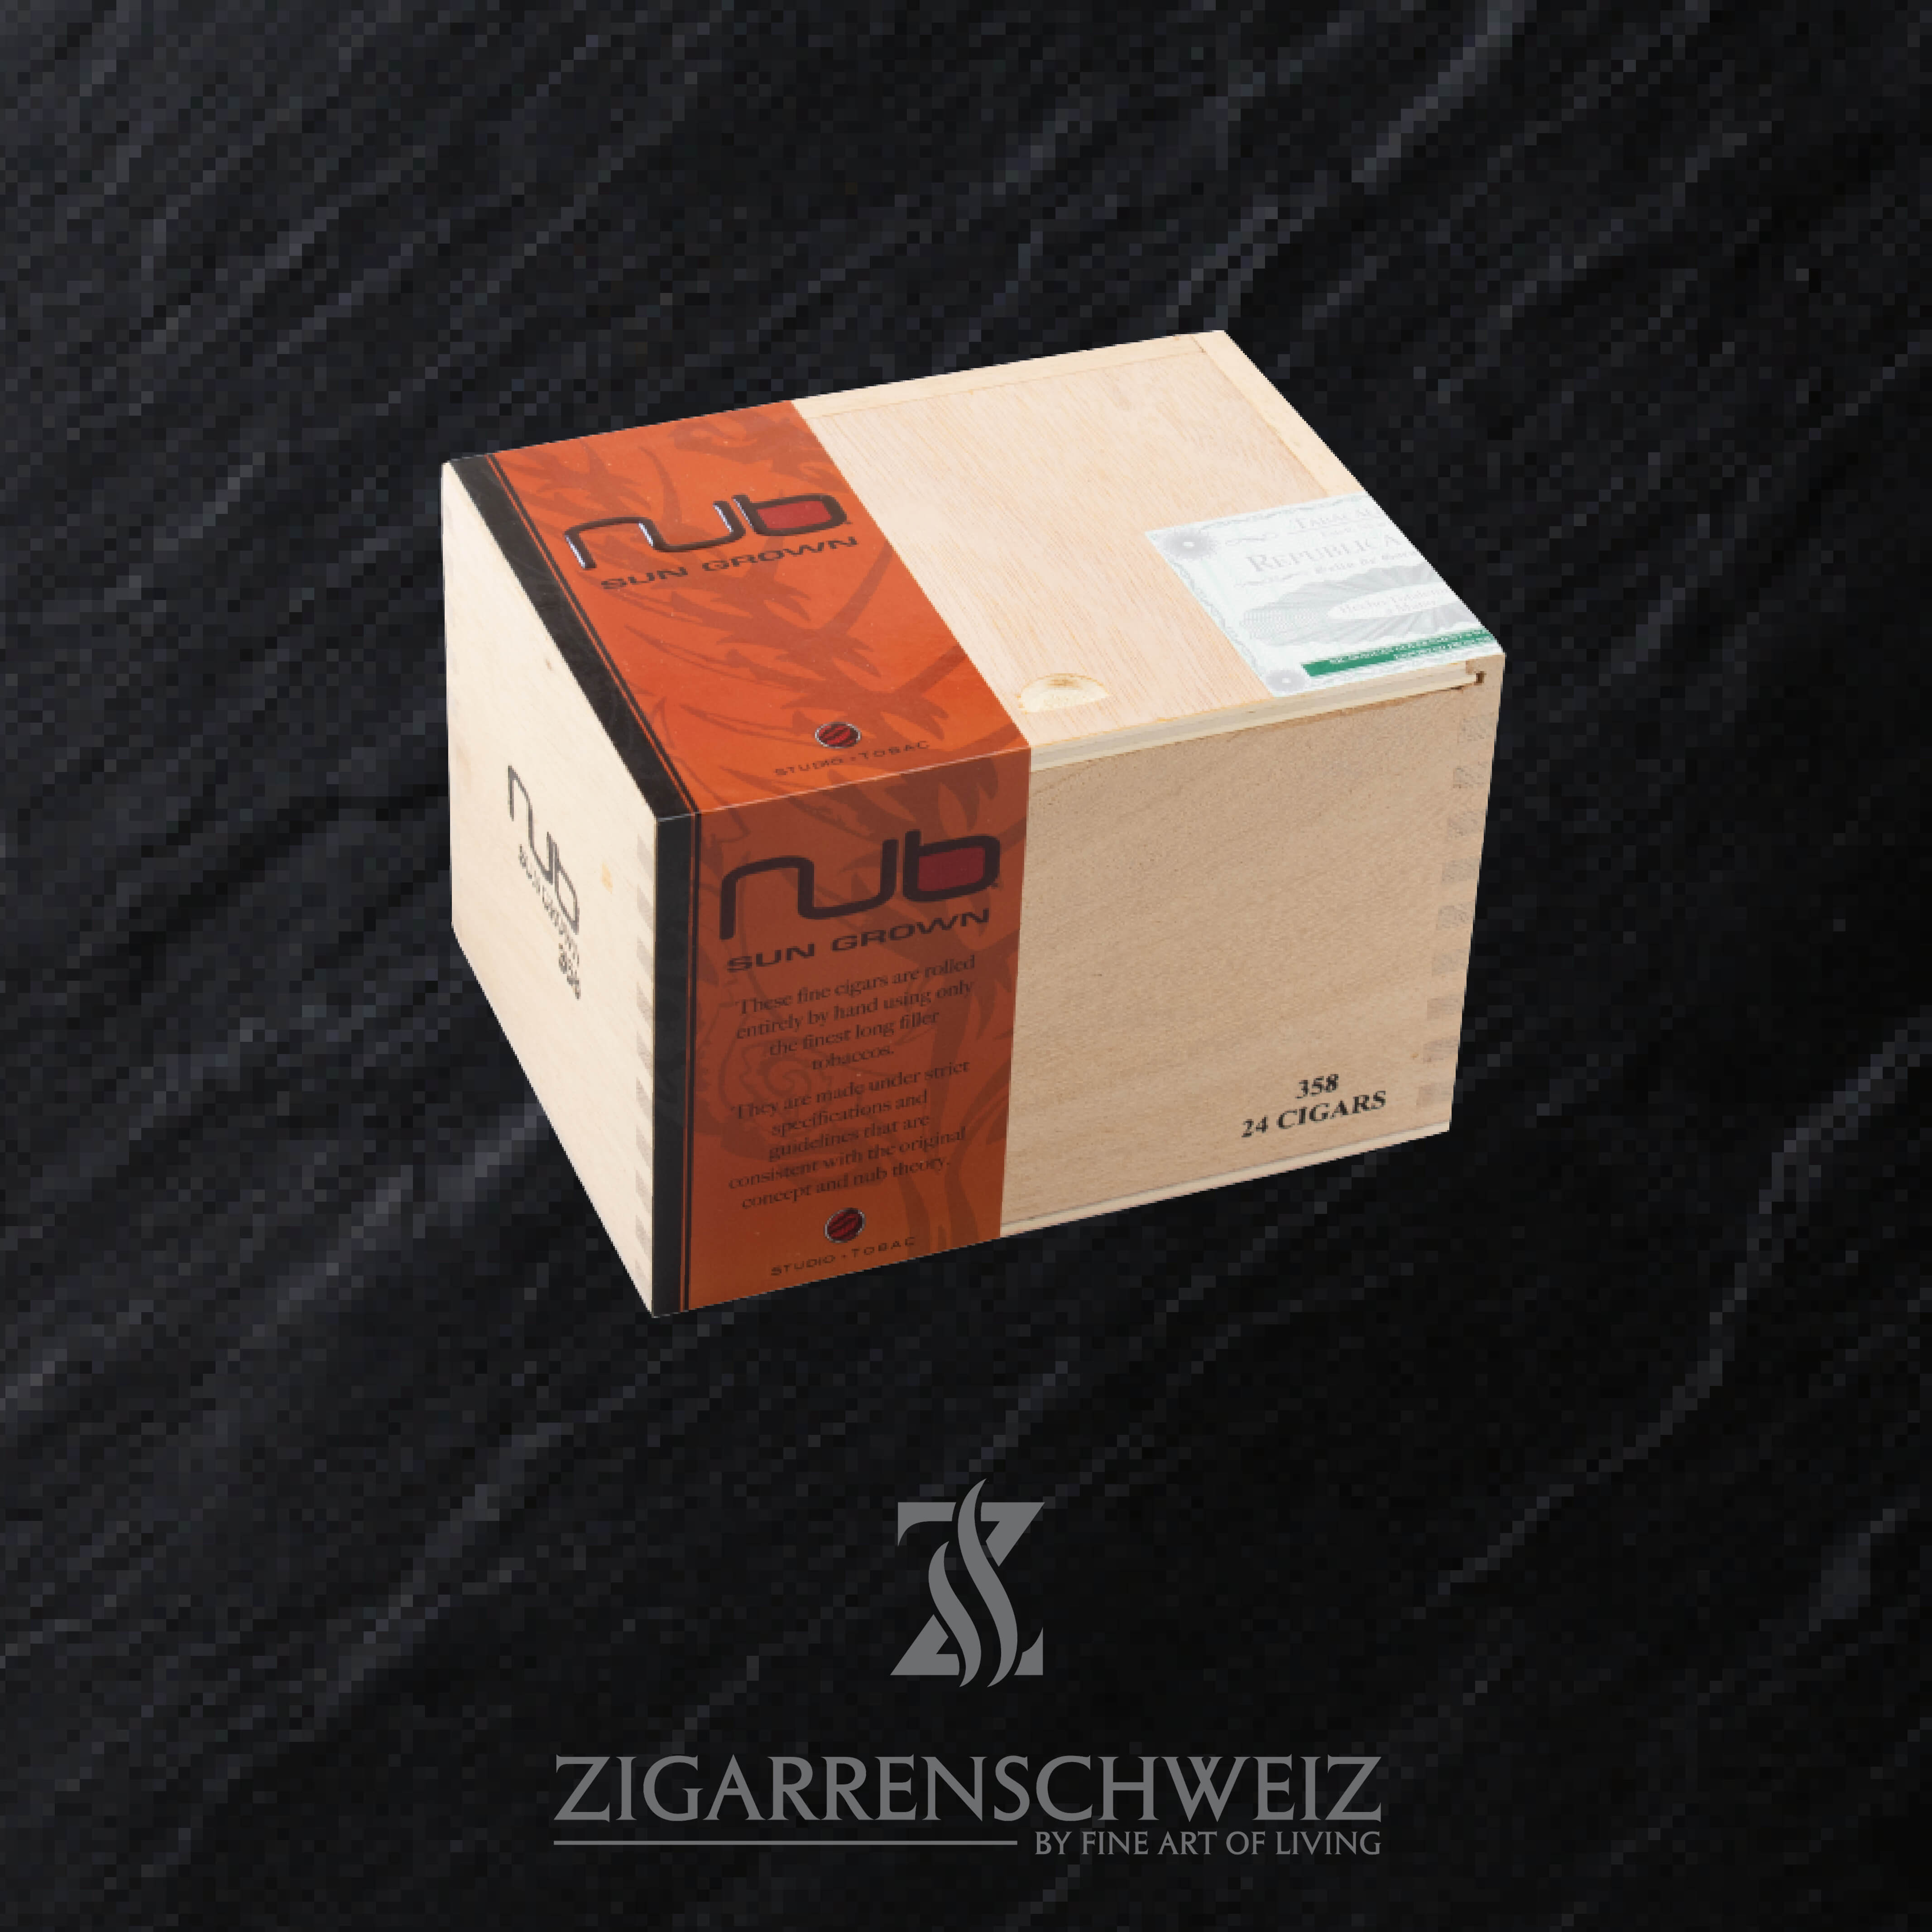 NUB Sungrown 358 Zigarren Kiste geschlossen